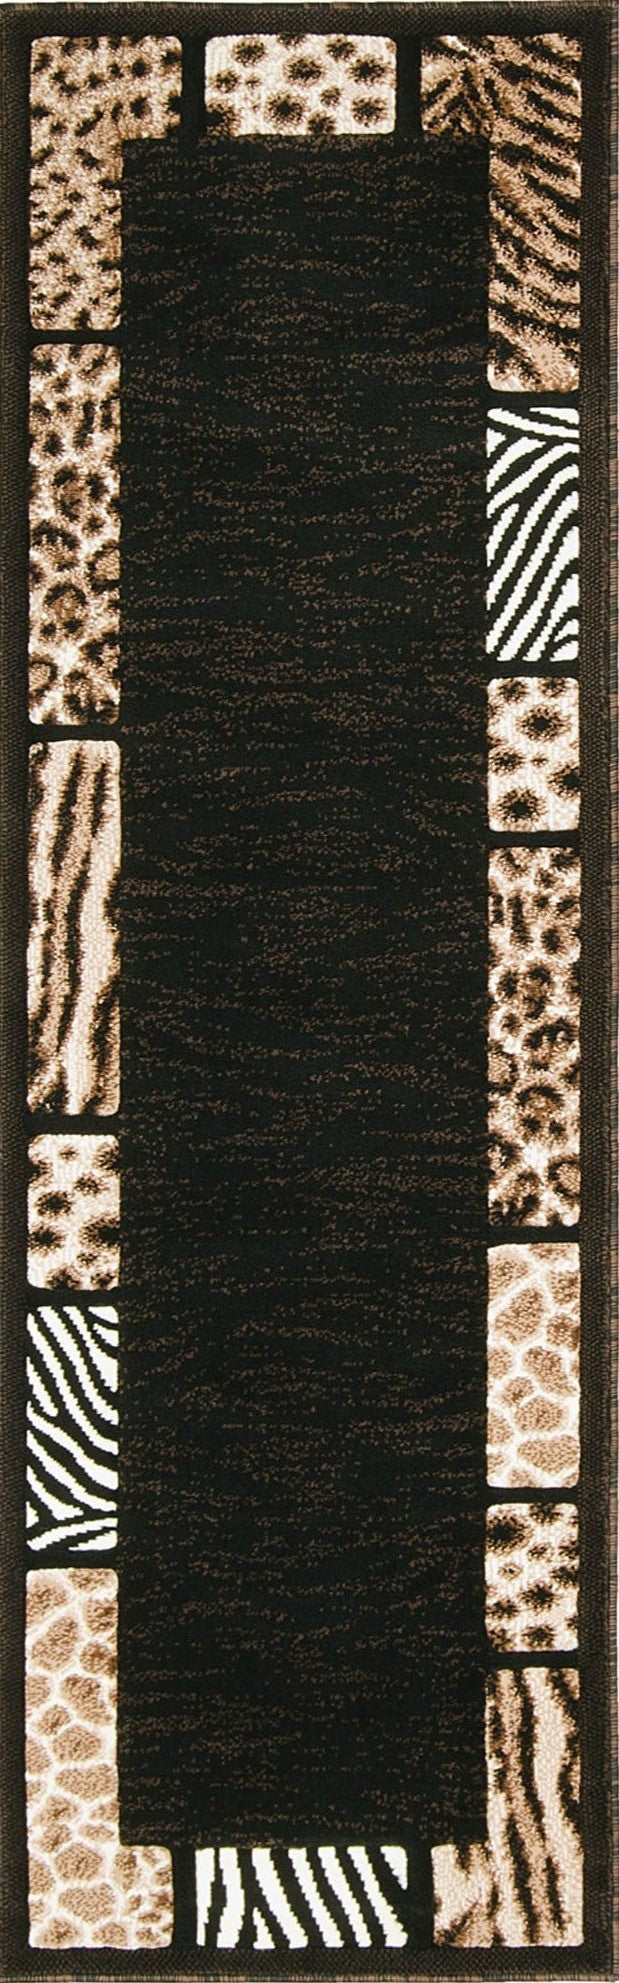 American cover design / Persian weavers Skinz-73 Animal Print Rug